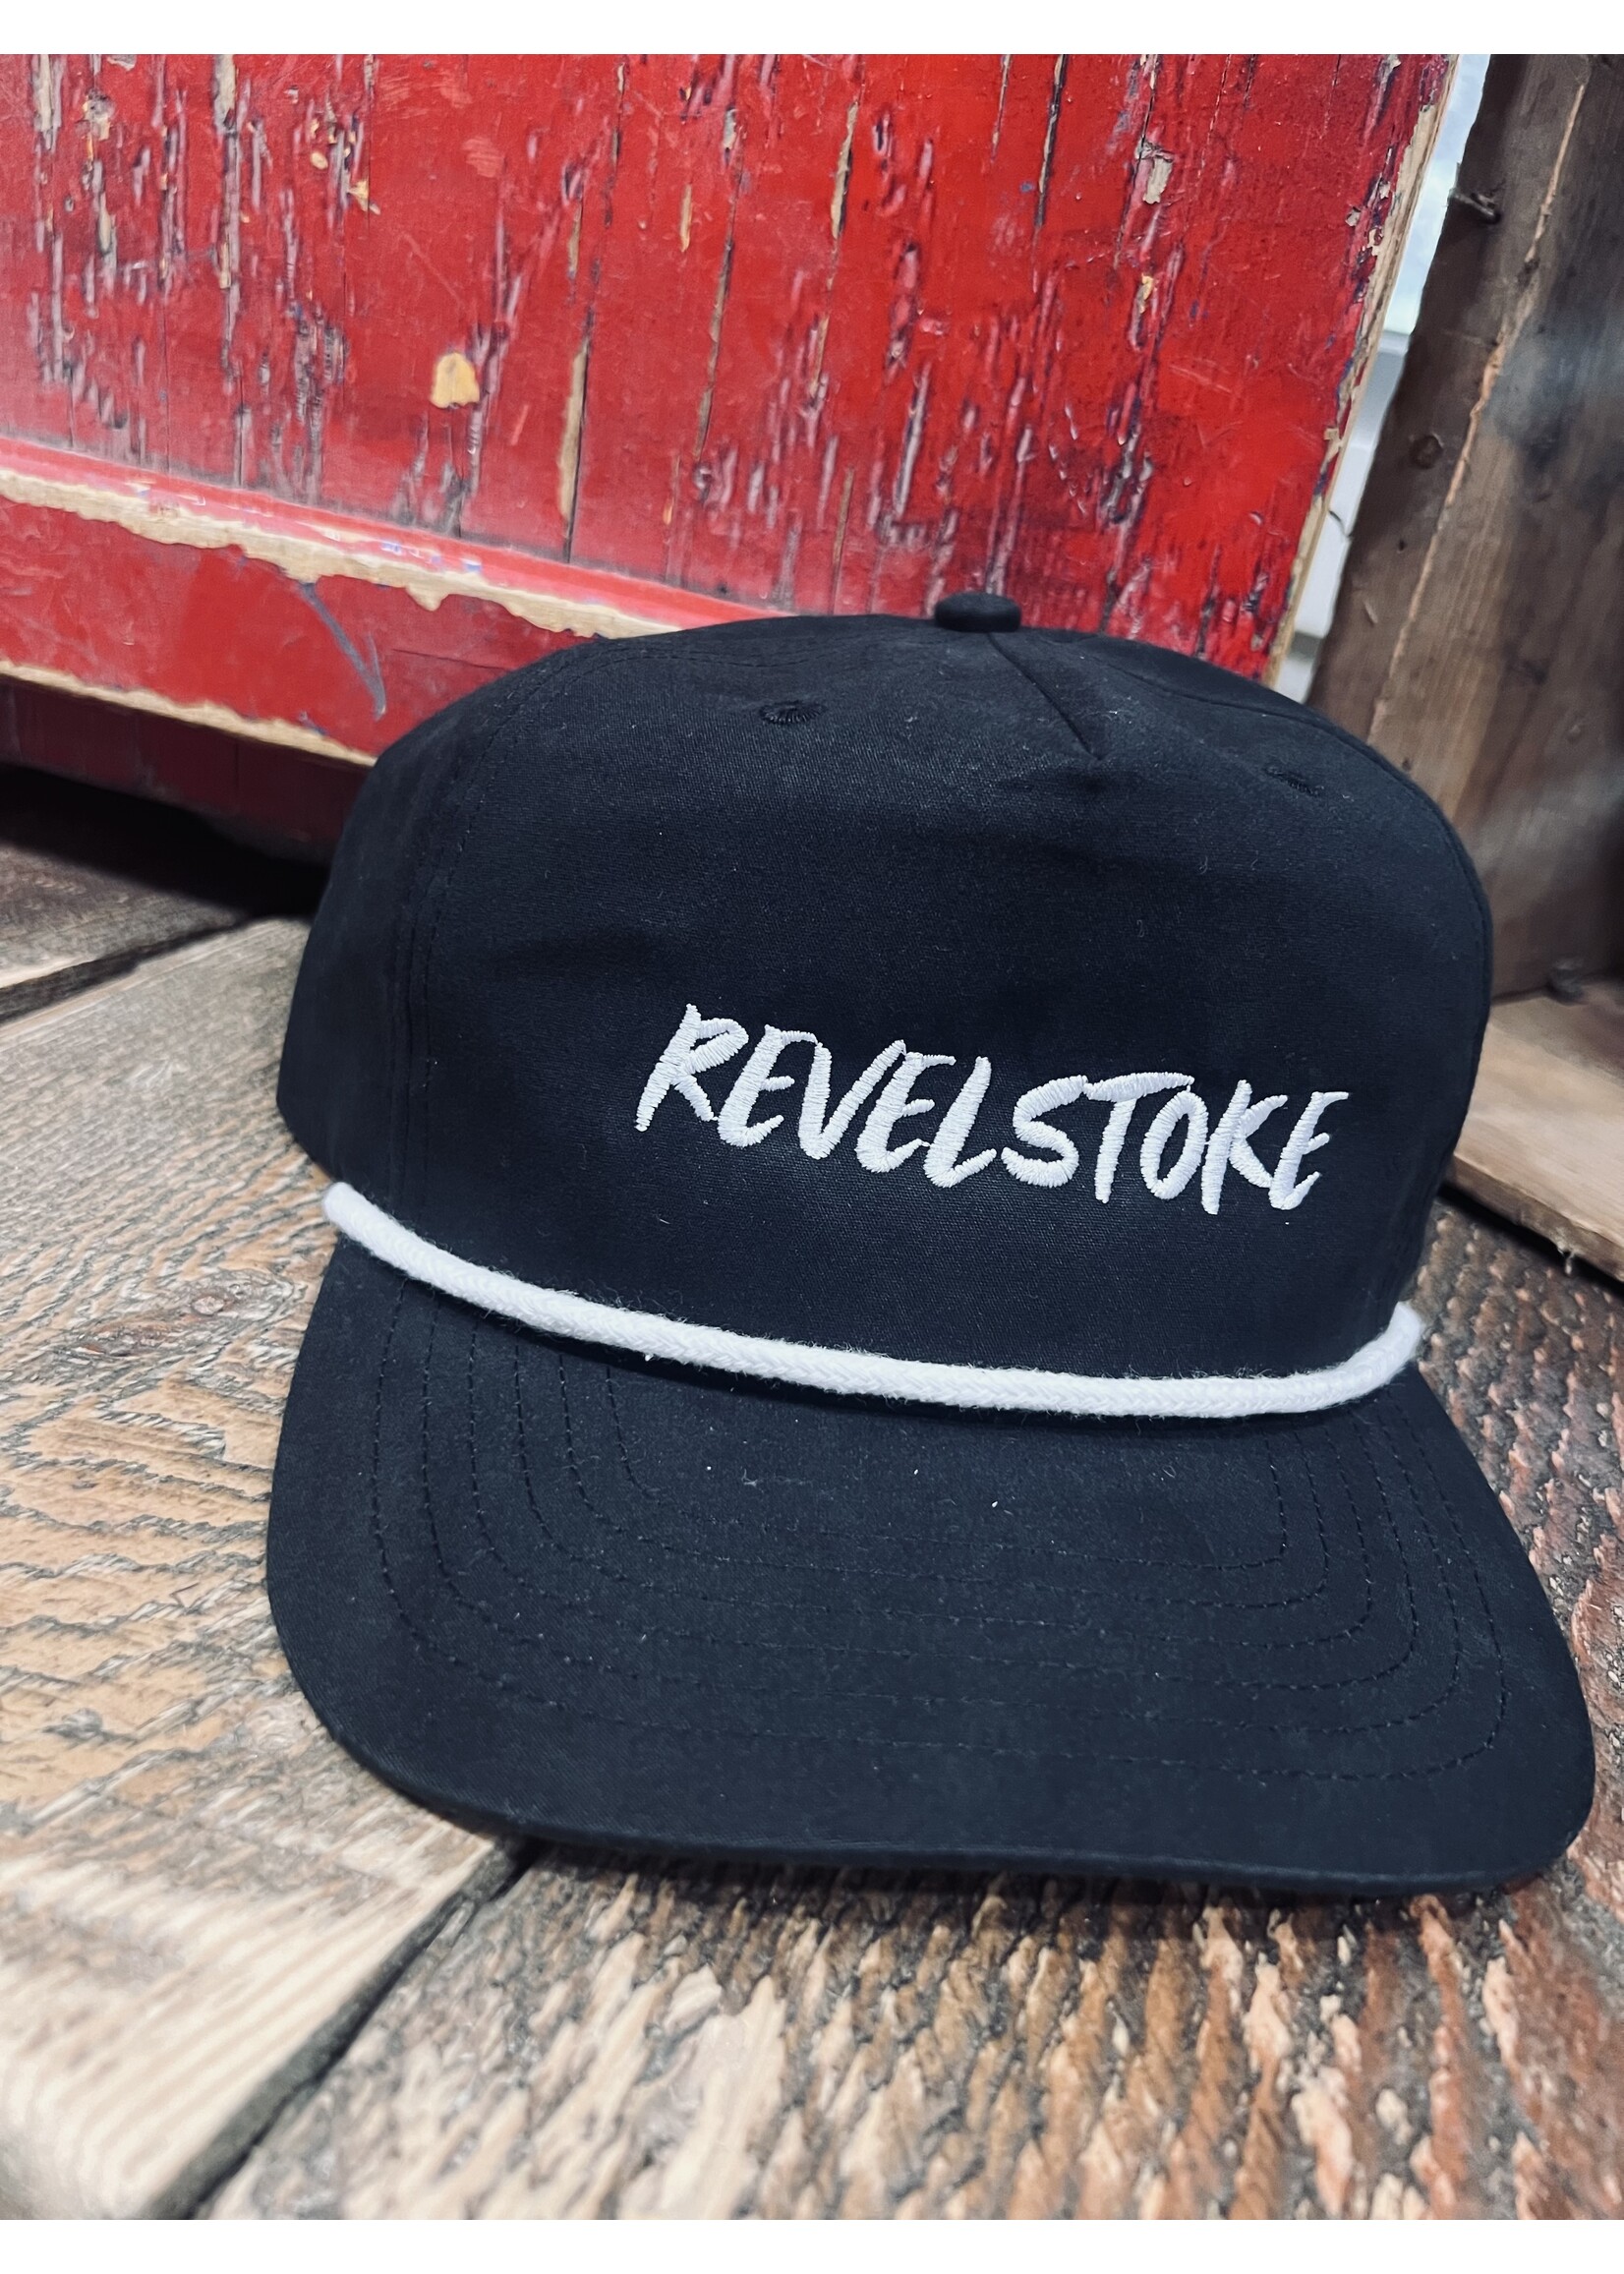 Trading Co. Revelstoke - Paint Brush Cap